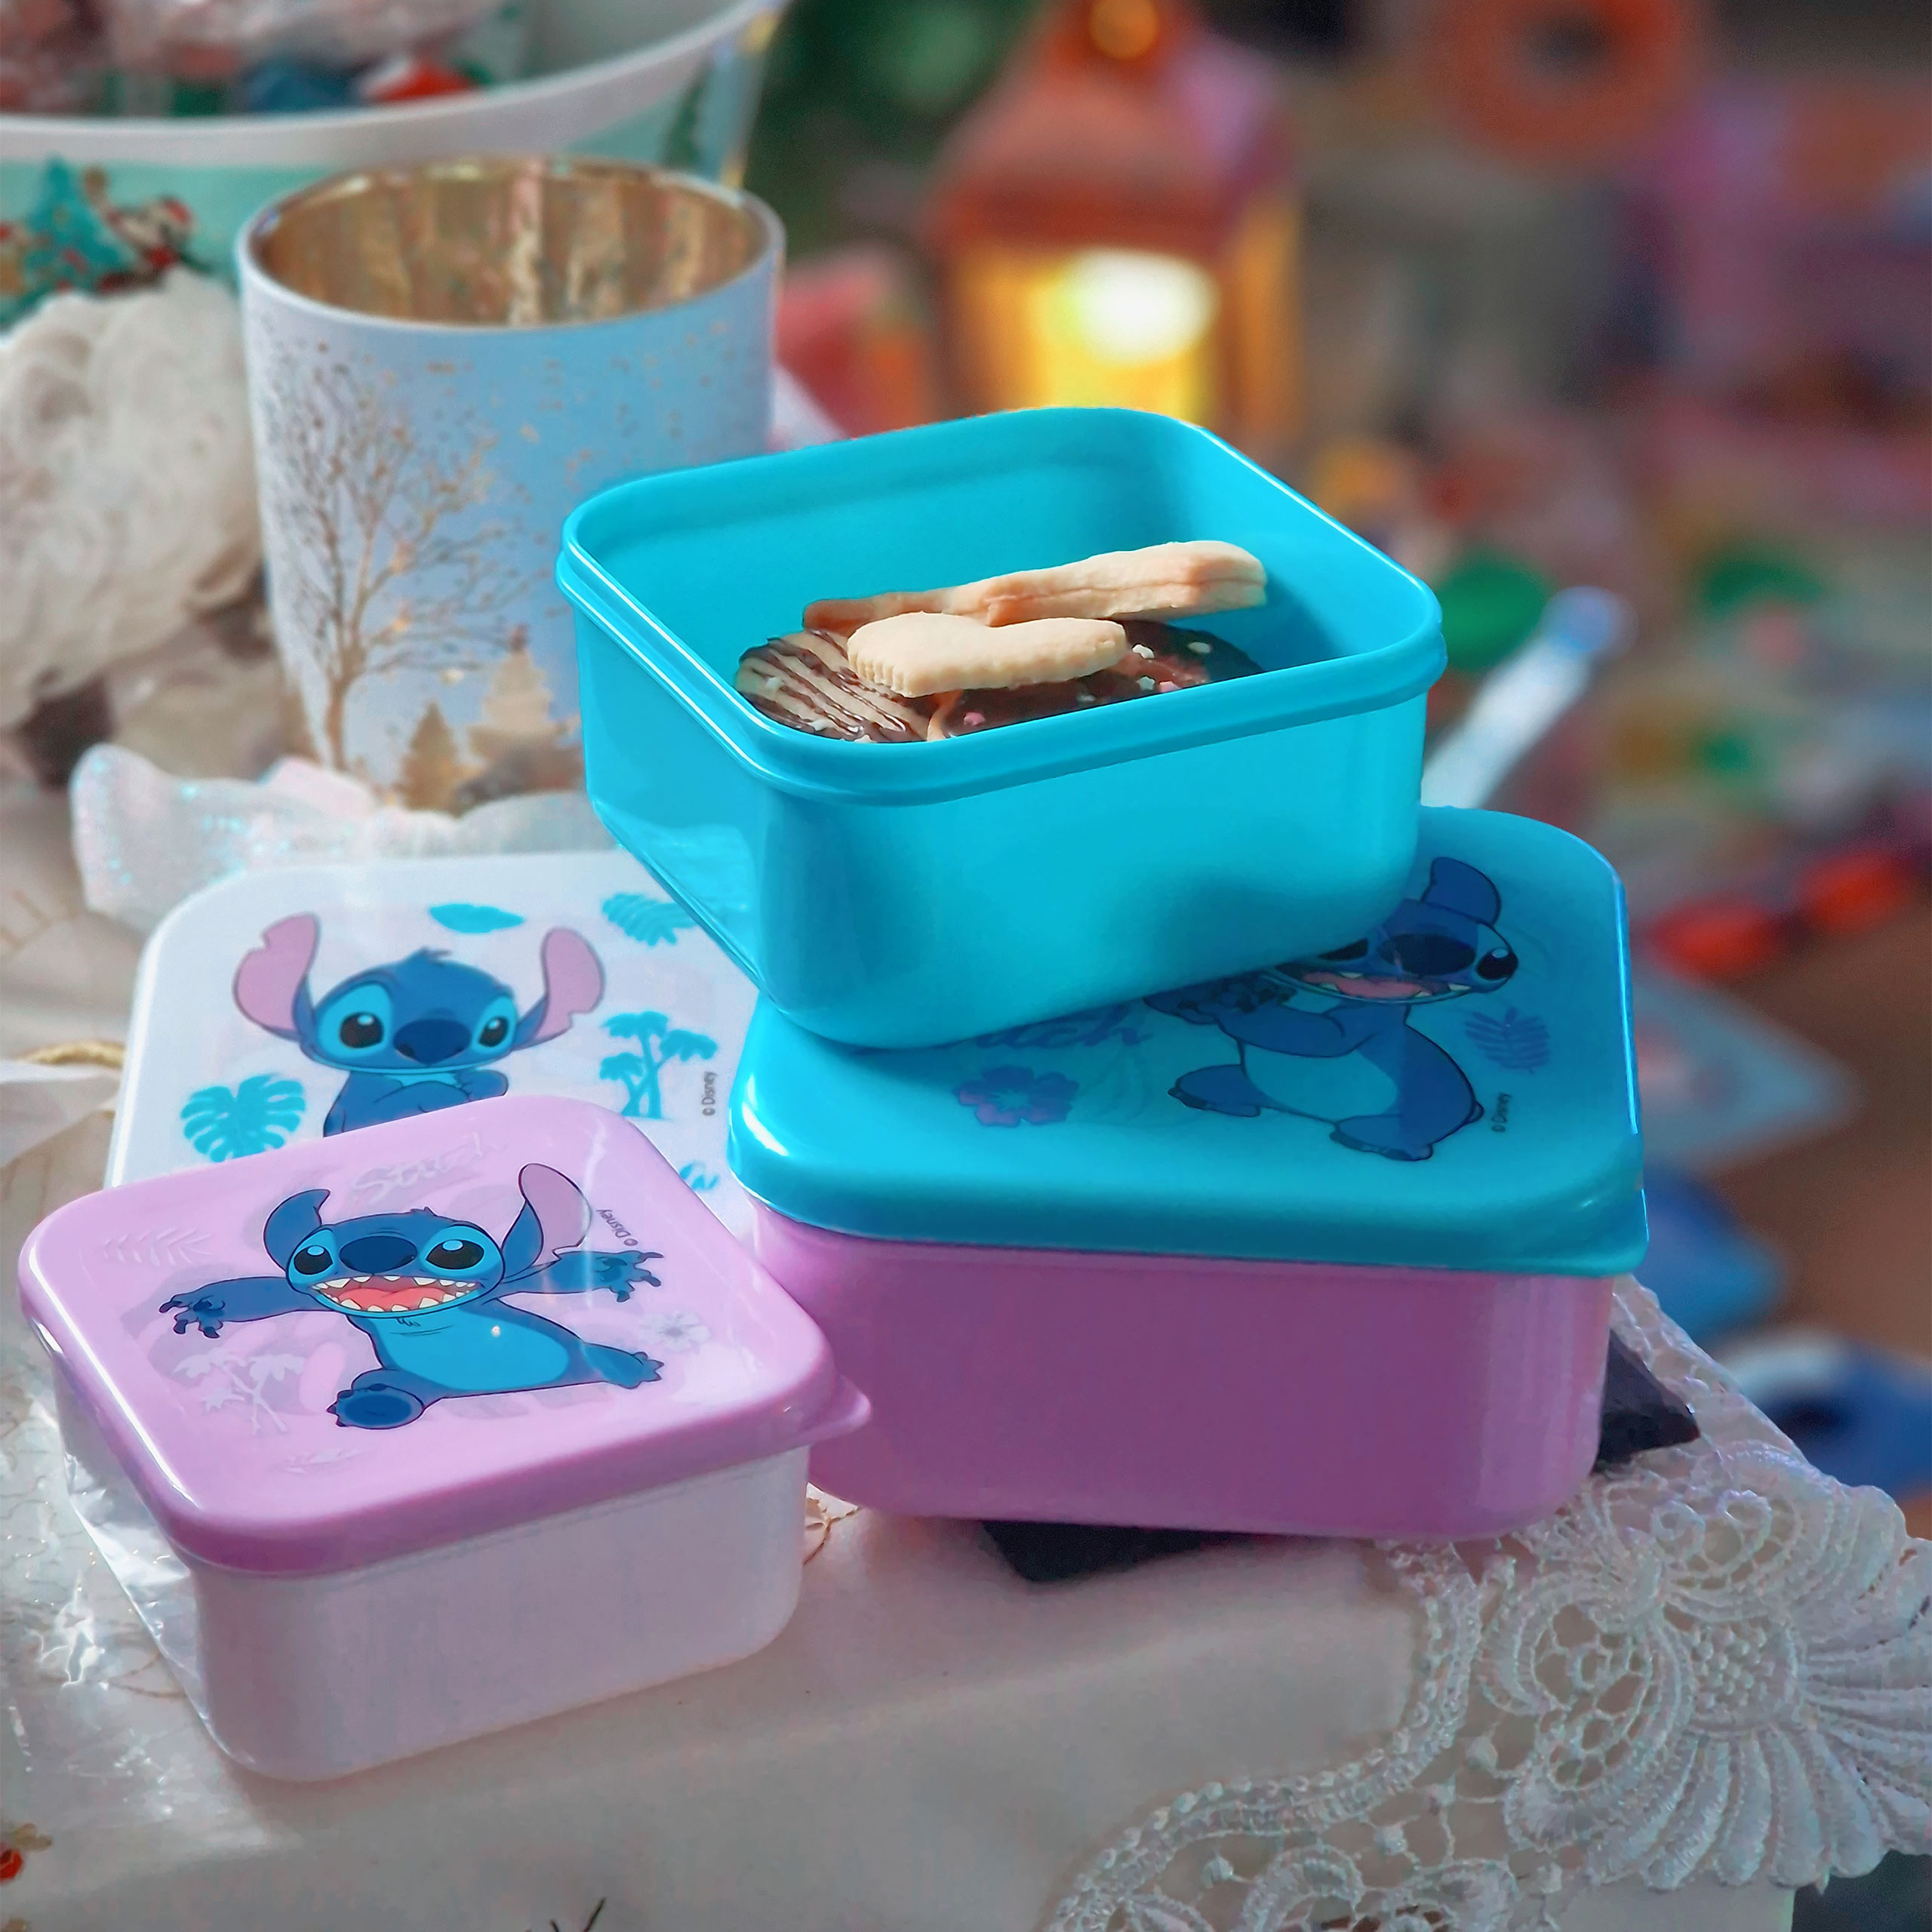 Stitch Lunchbox 3-piece set - Lilo & Stitch